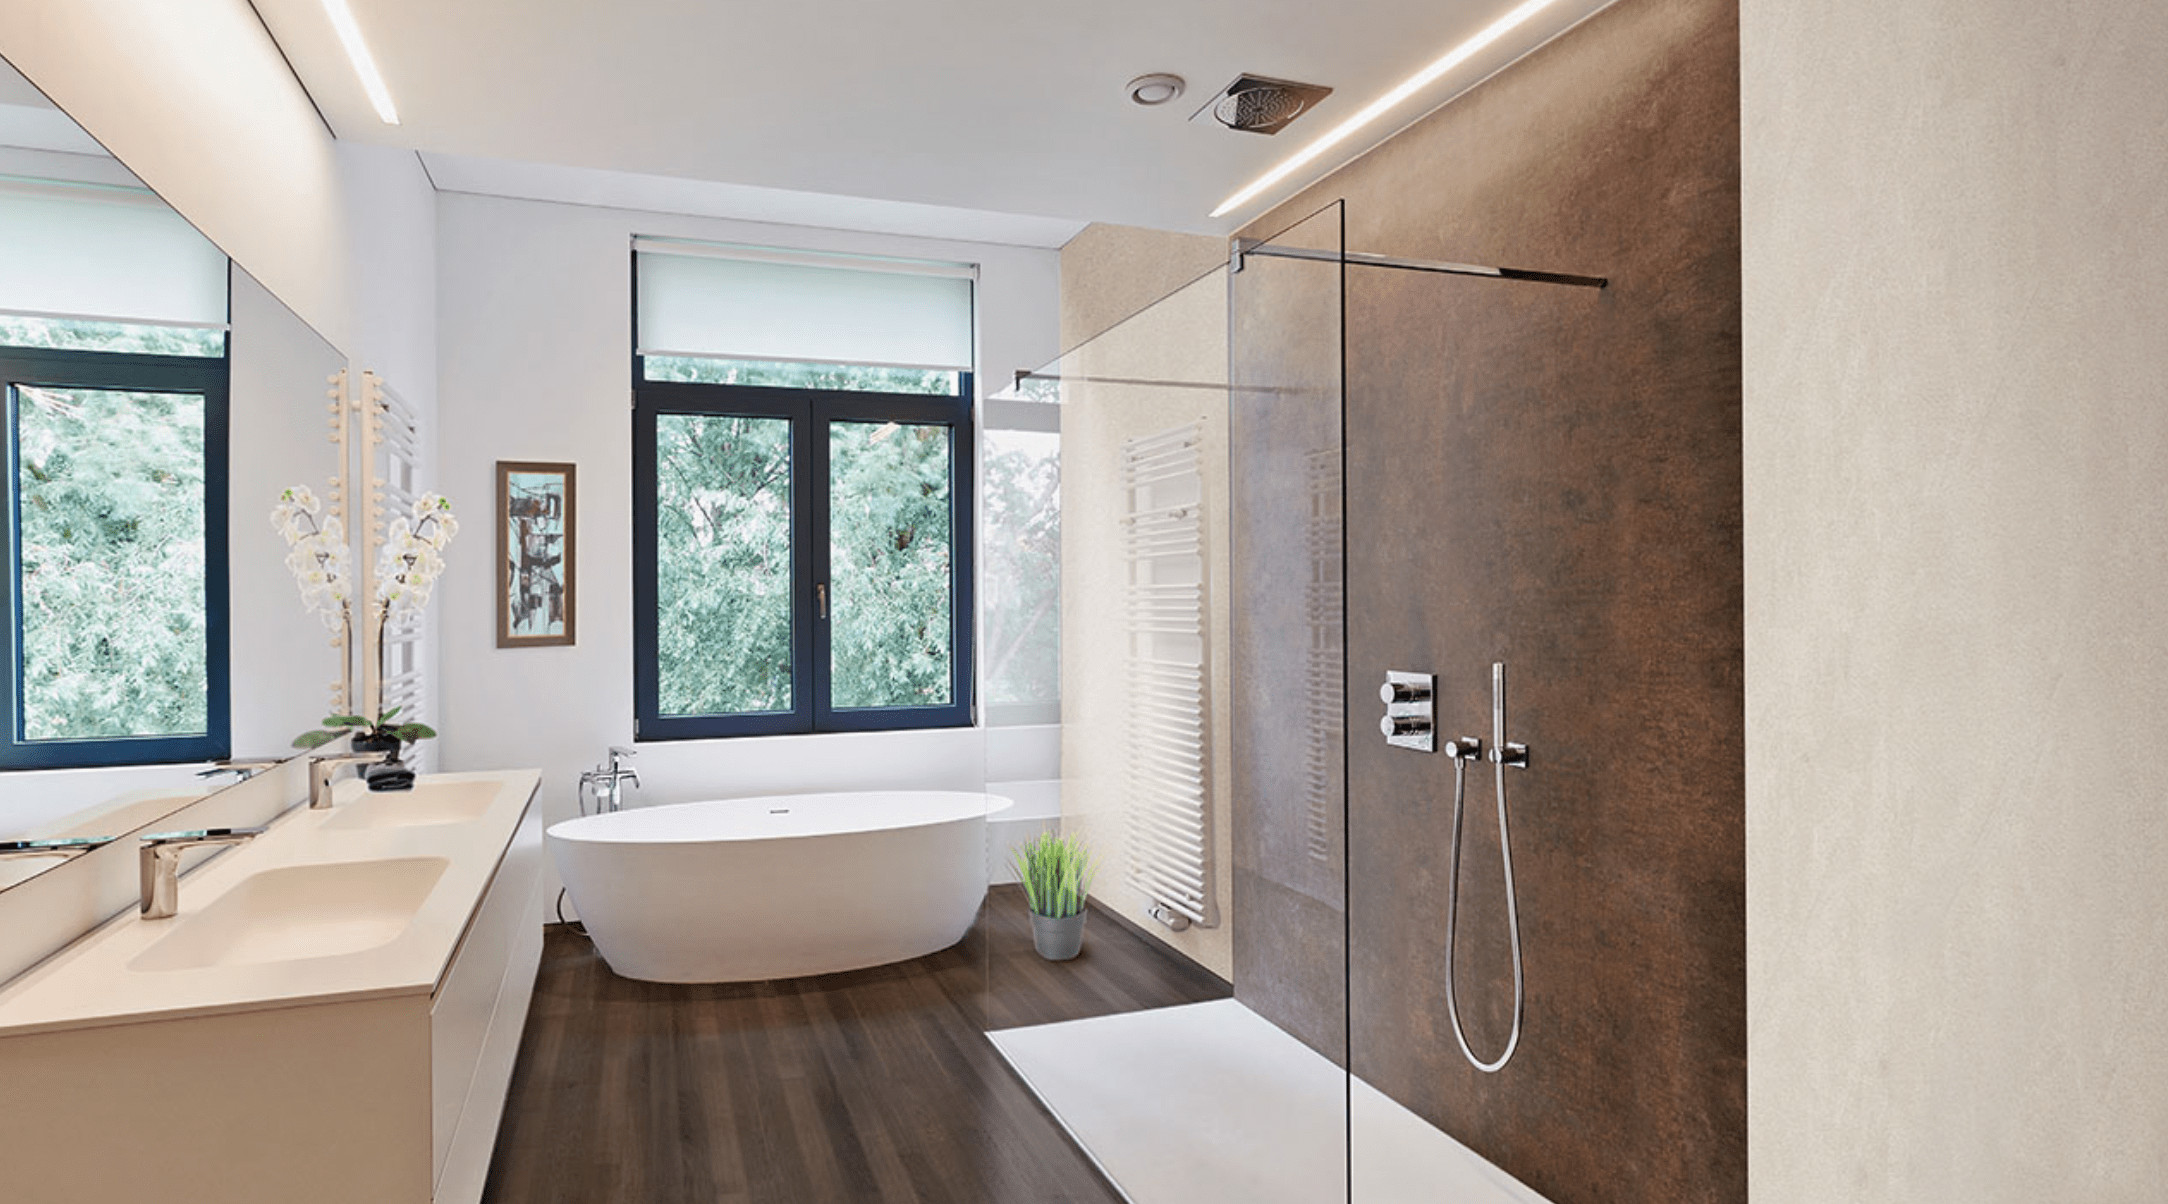 Bathroom Wall Coverings Waterproof
 Alternatives to Tiling Your Bathrooms Waterproof